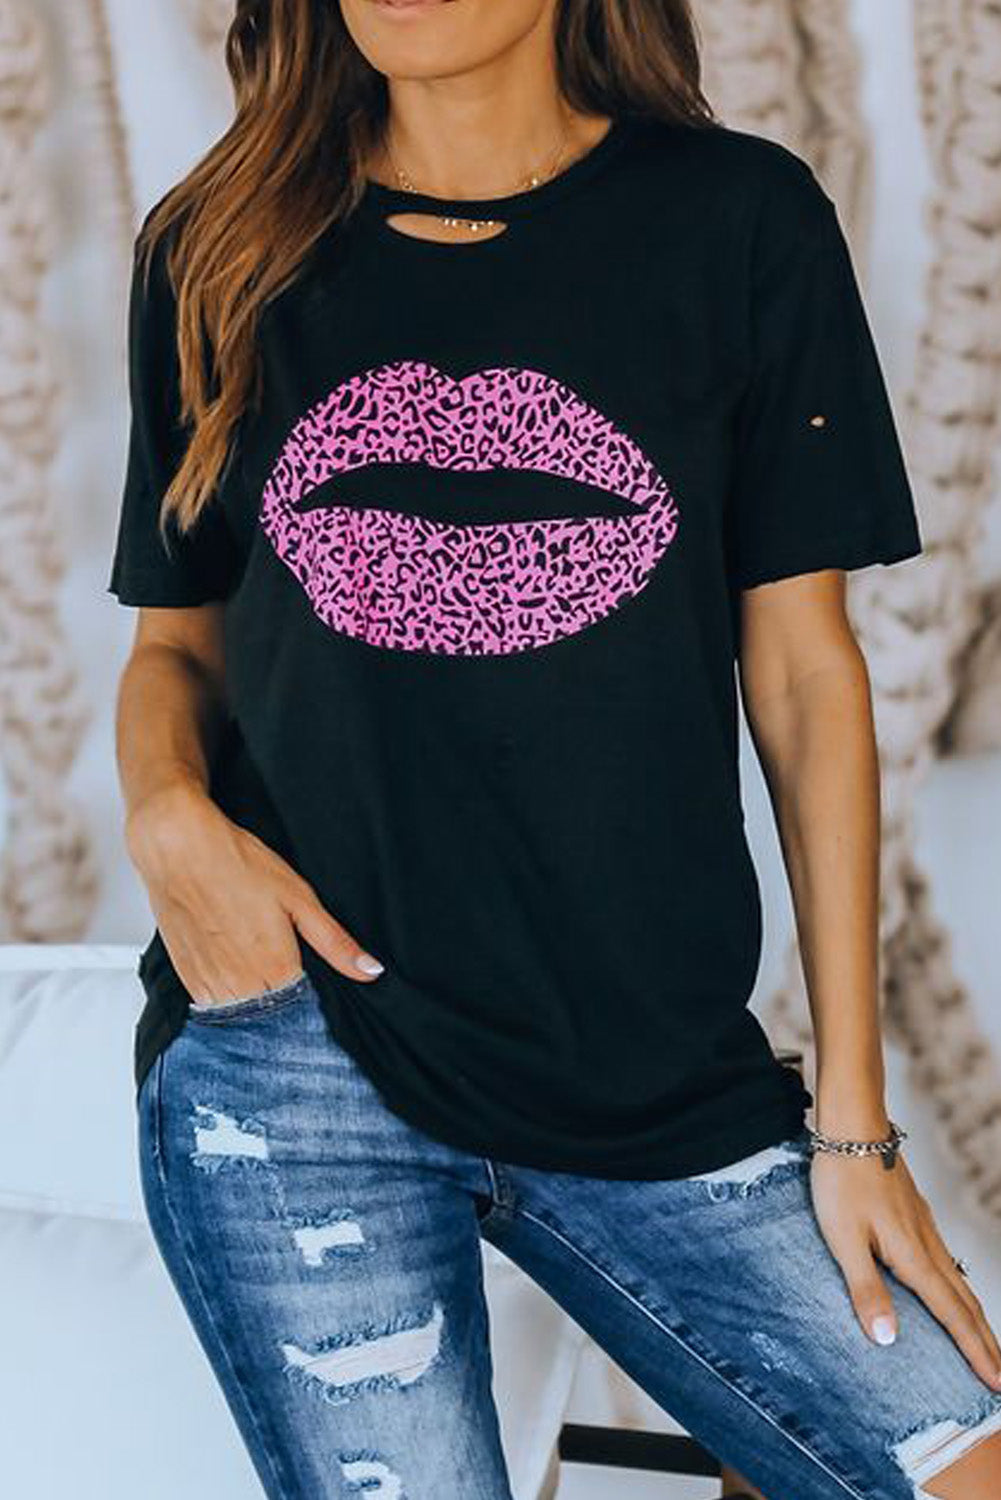 Trendsi Cupid Beauty Supplies Black / S Woman's T-Shirts Leopard Lip Distressed T-Shirt